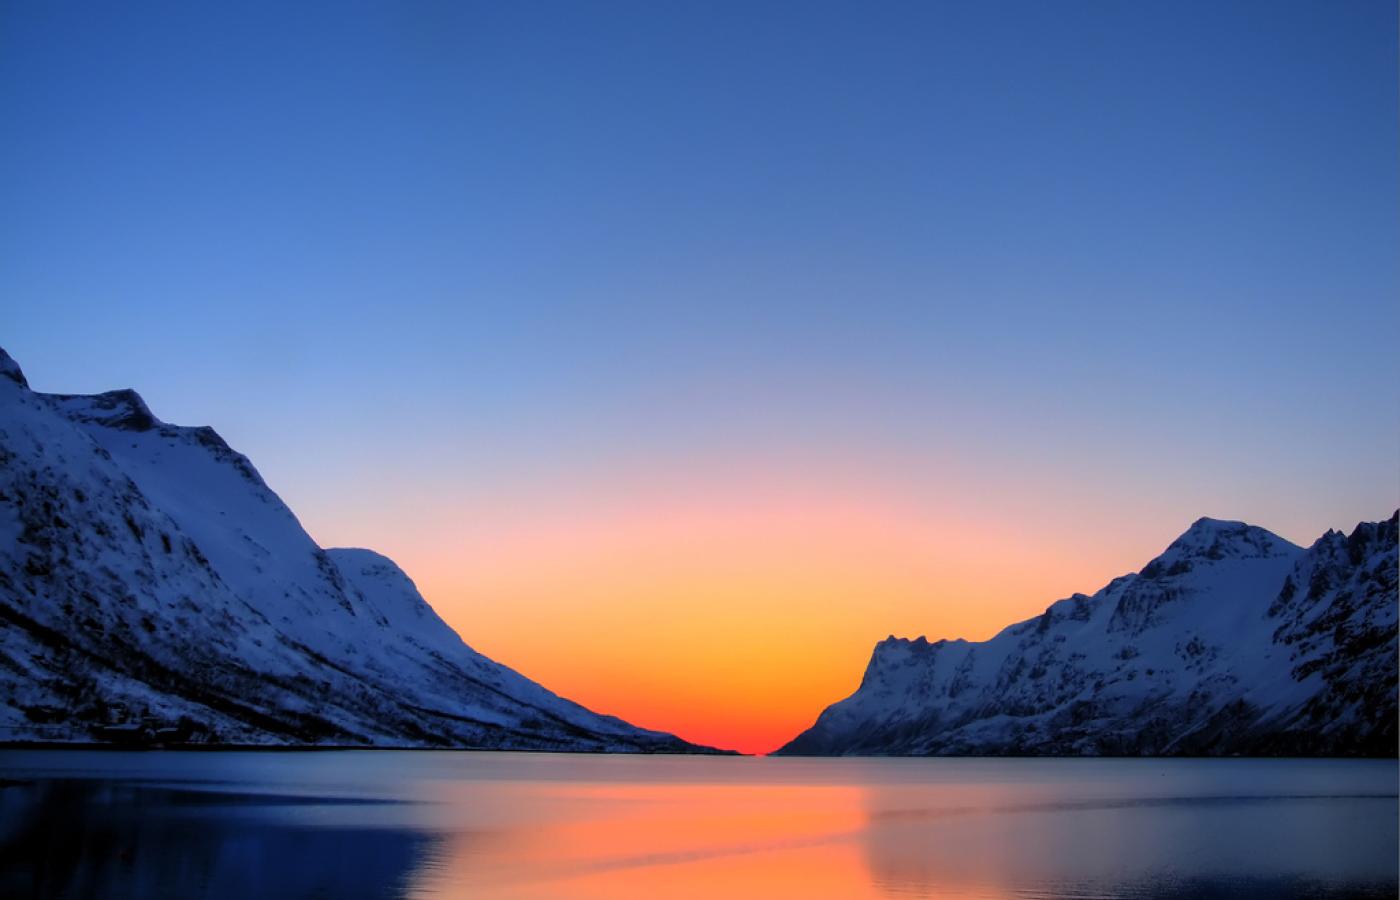 Badania arktyczne. Norwegowie przekonują, że właśnie Arktyka jest najbardziej zagrożona skutkami globalnego ocieplenia. Zmiany klimatu wpływają też na zachowania zwierząt.